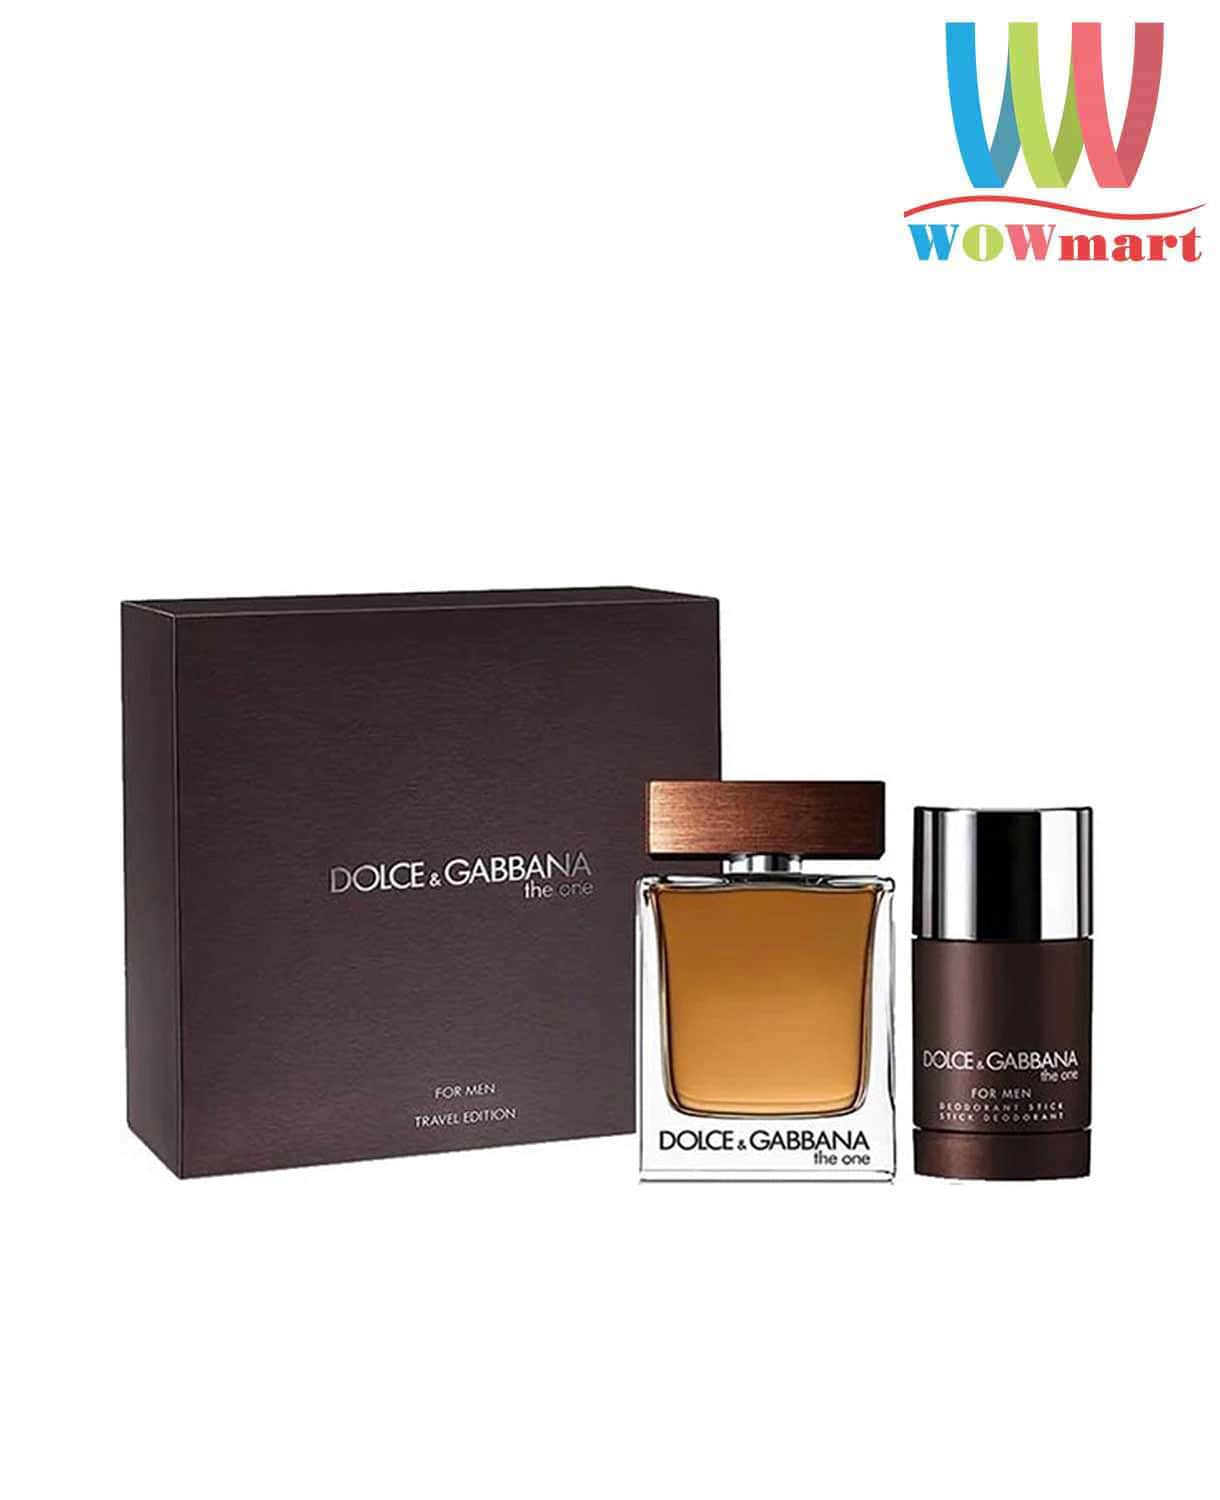 Set Nước hoa nam Dolce & Gabbana The One EDT 100ml + Lăn khử mùi 70g –  Wowmart VN | 100% hàng ngoại nhập